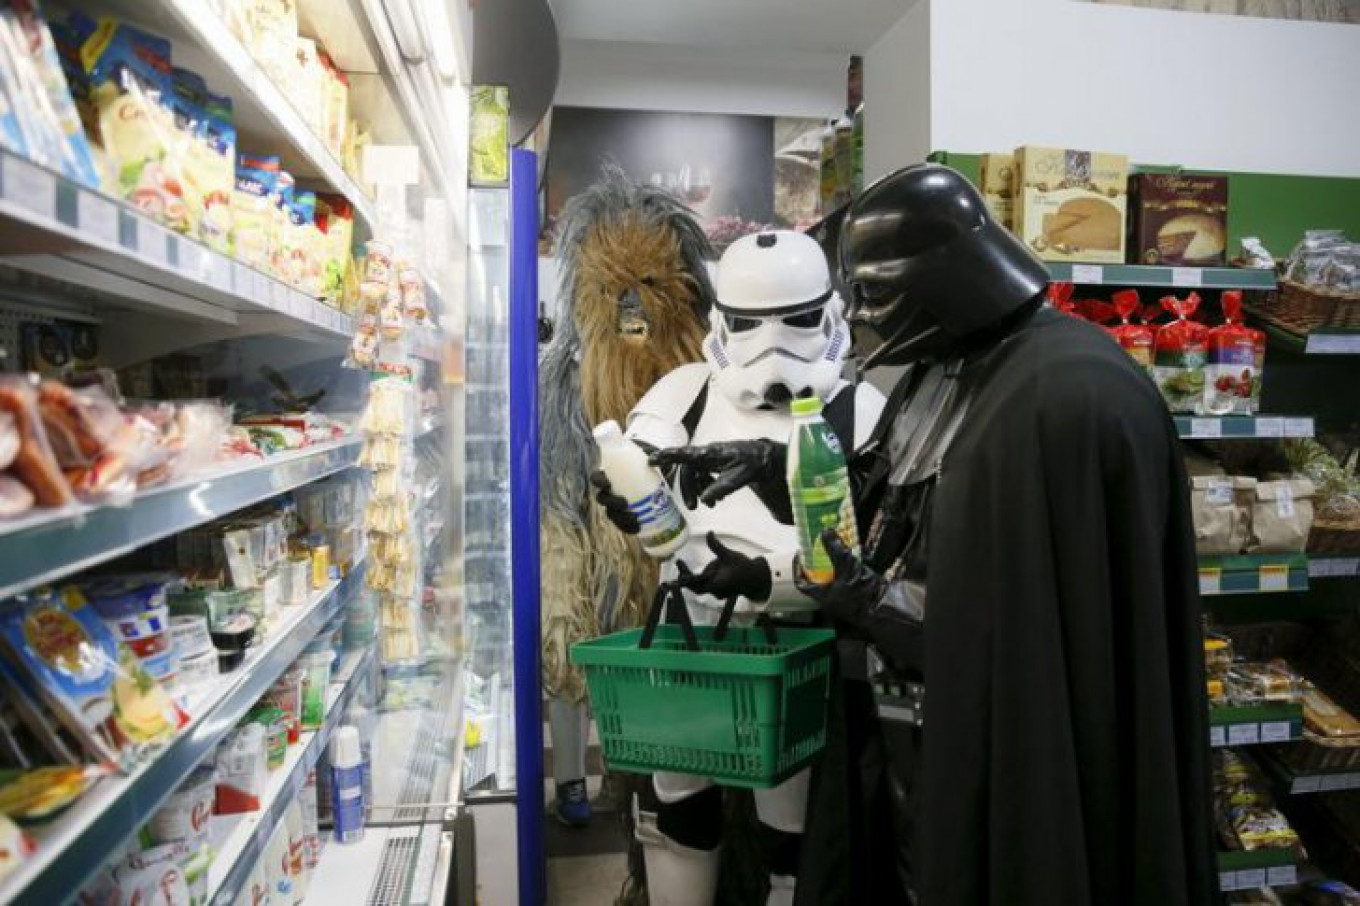 star wars supermarket